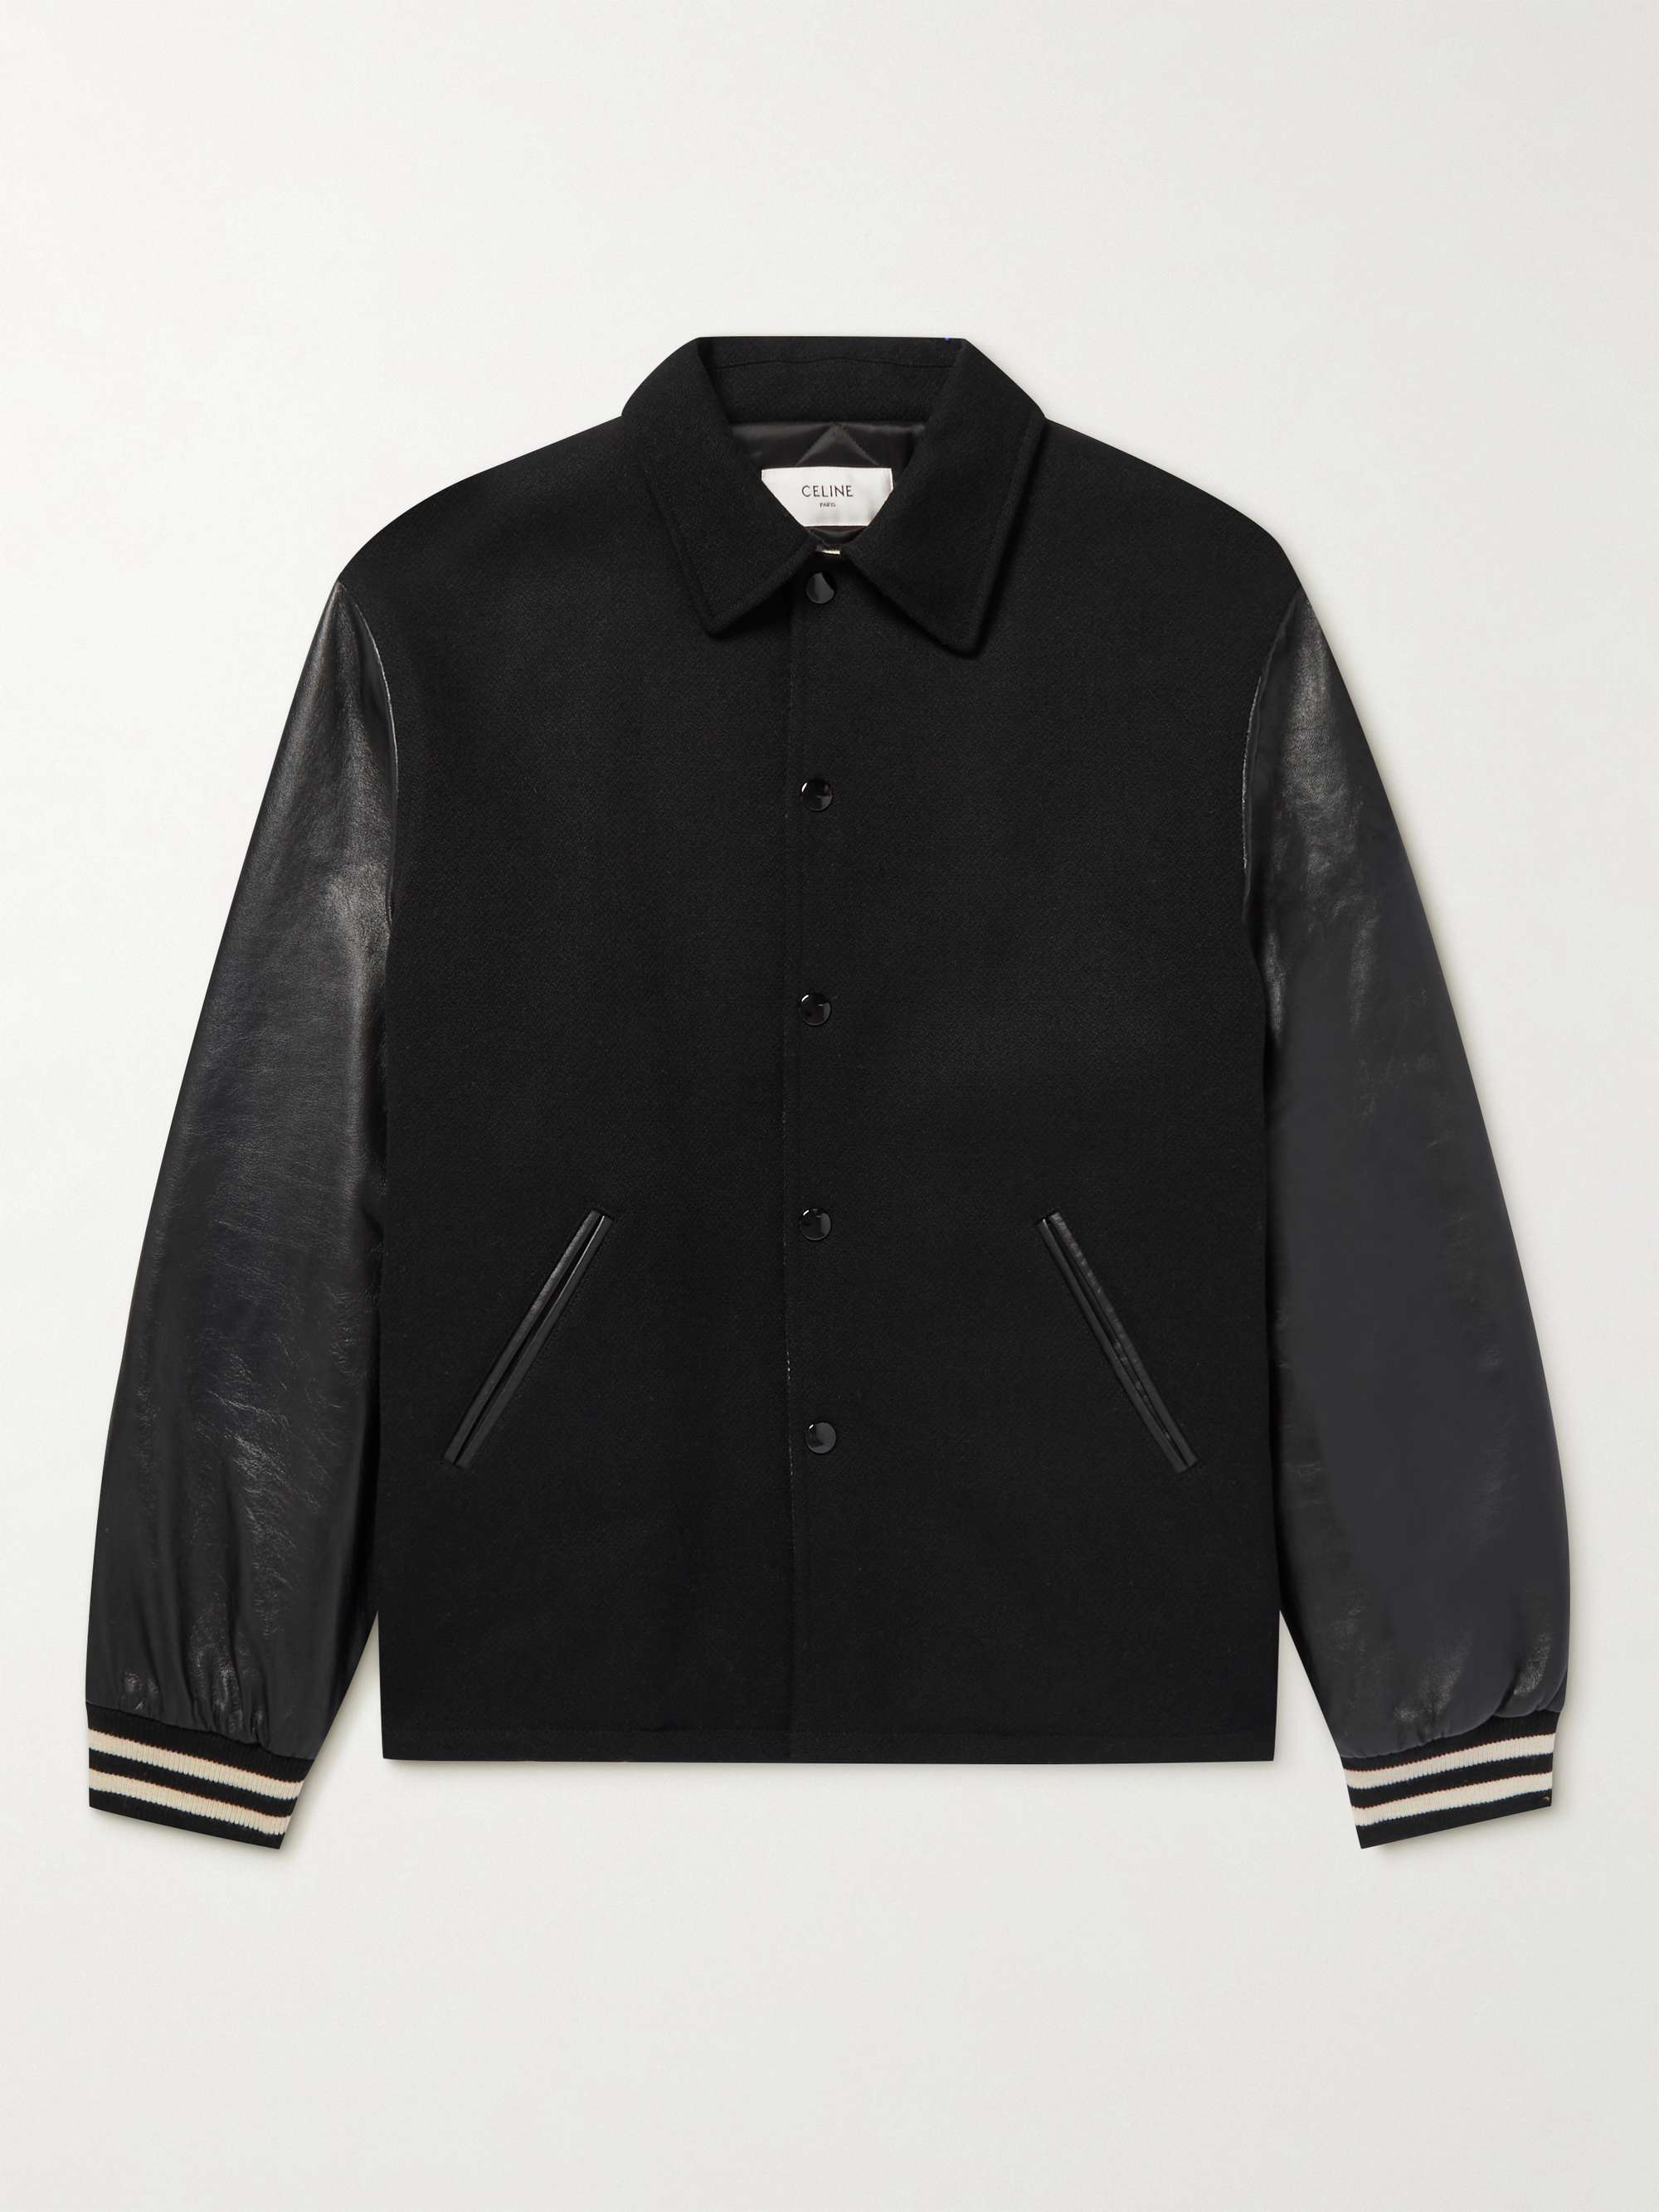 CELINE HOMME Embellished Appliquéd Mohair-Blend and Leather Bomber Jacket